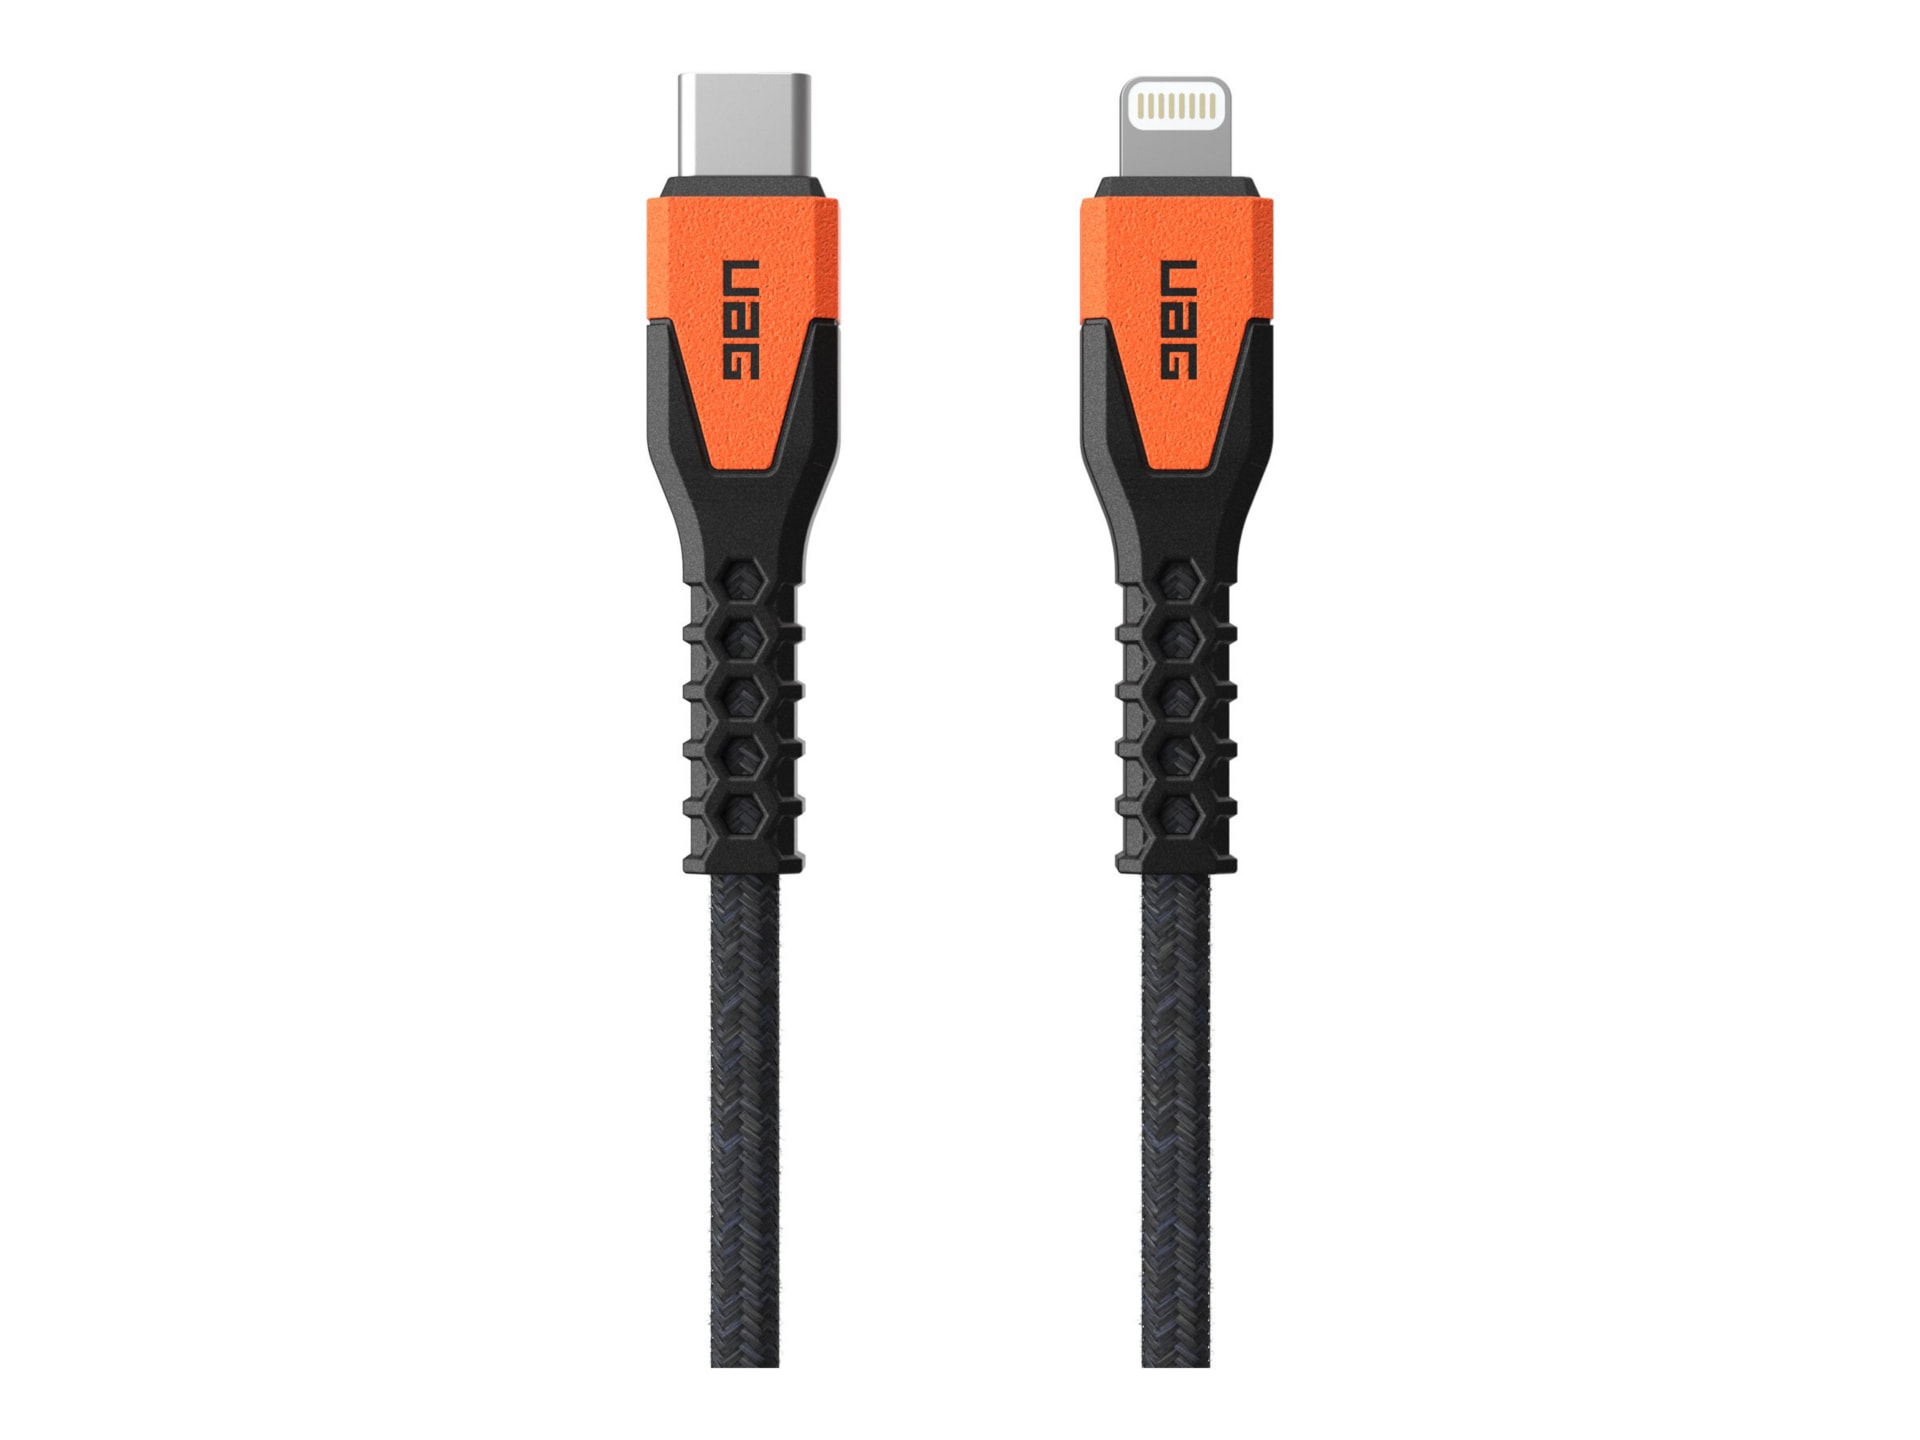 UAG Rugged Charging Cable USB-C to Lightning 5ft- Black/Orange - Lightning